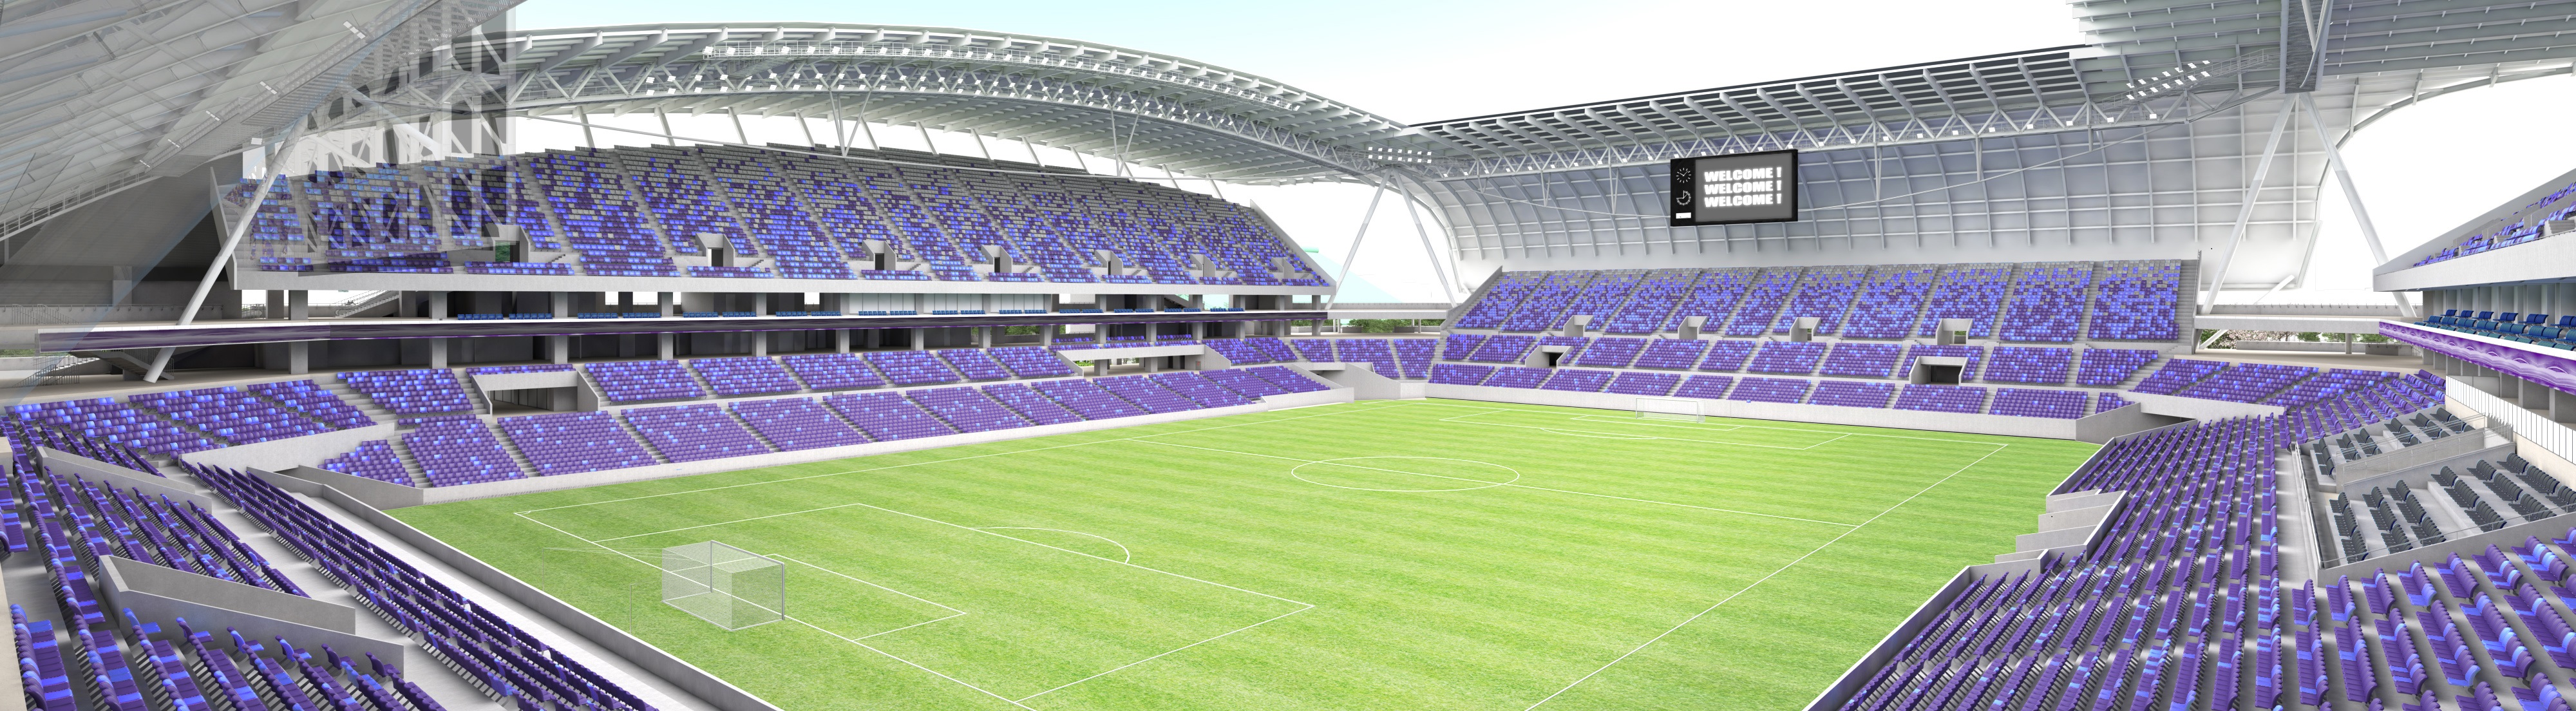 サッカースタジアム建設の推進のタイトル画像